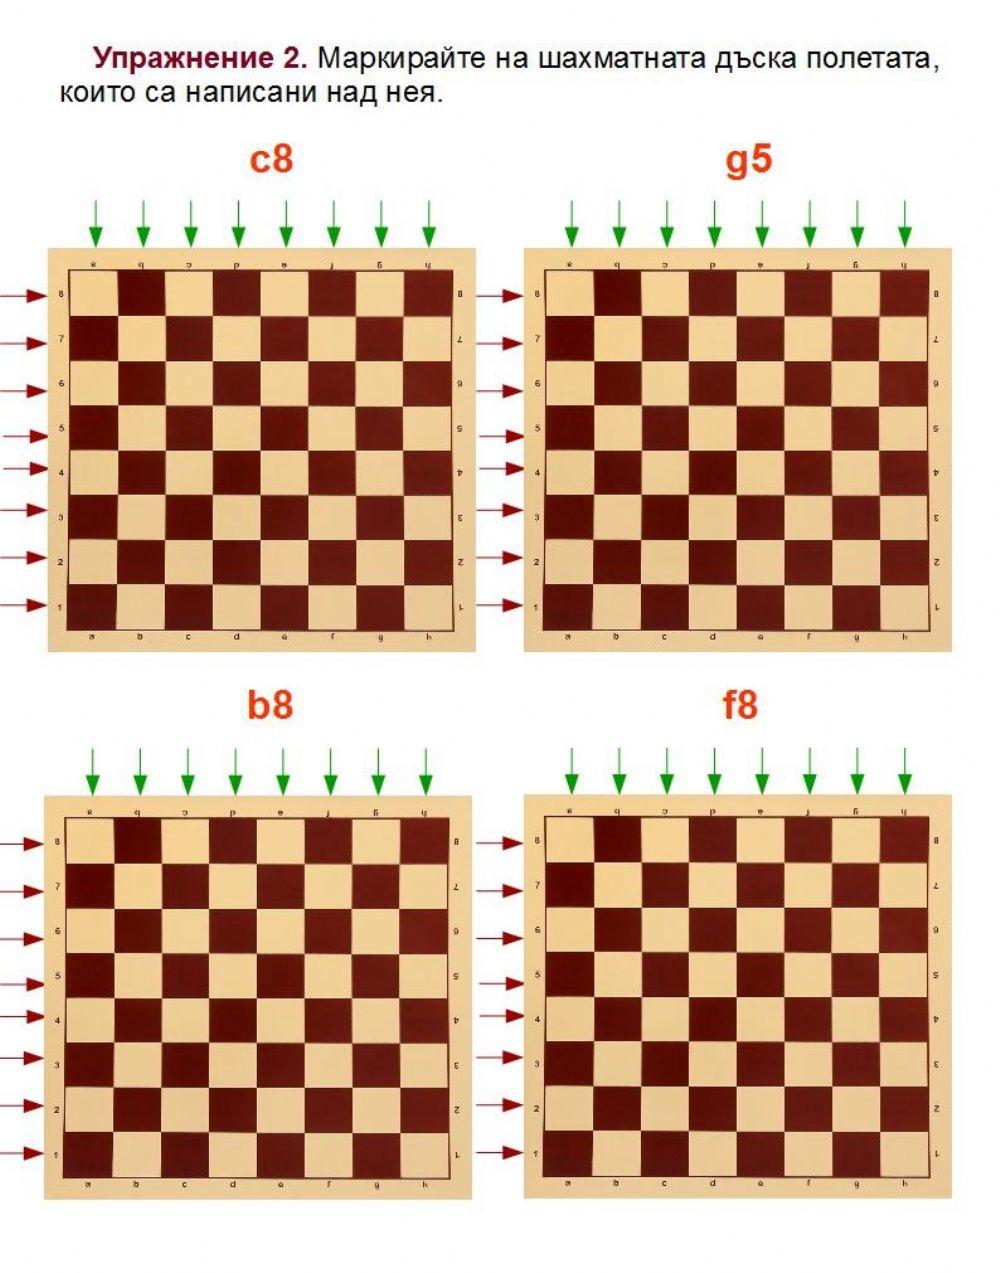 Маркиране на шахматно поле